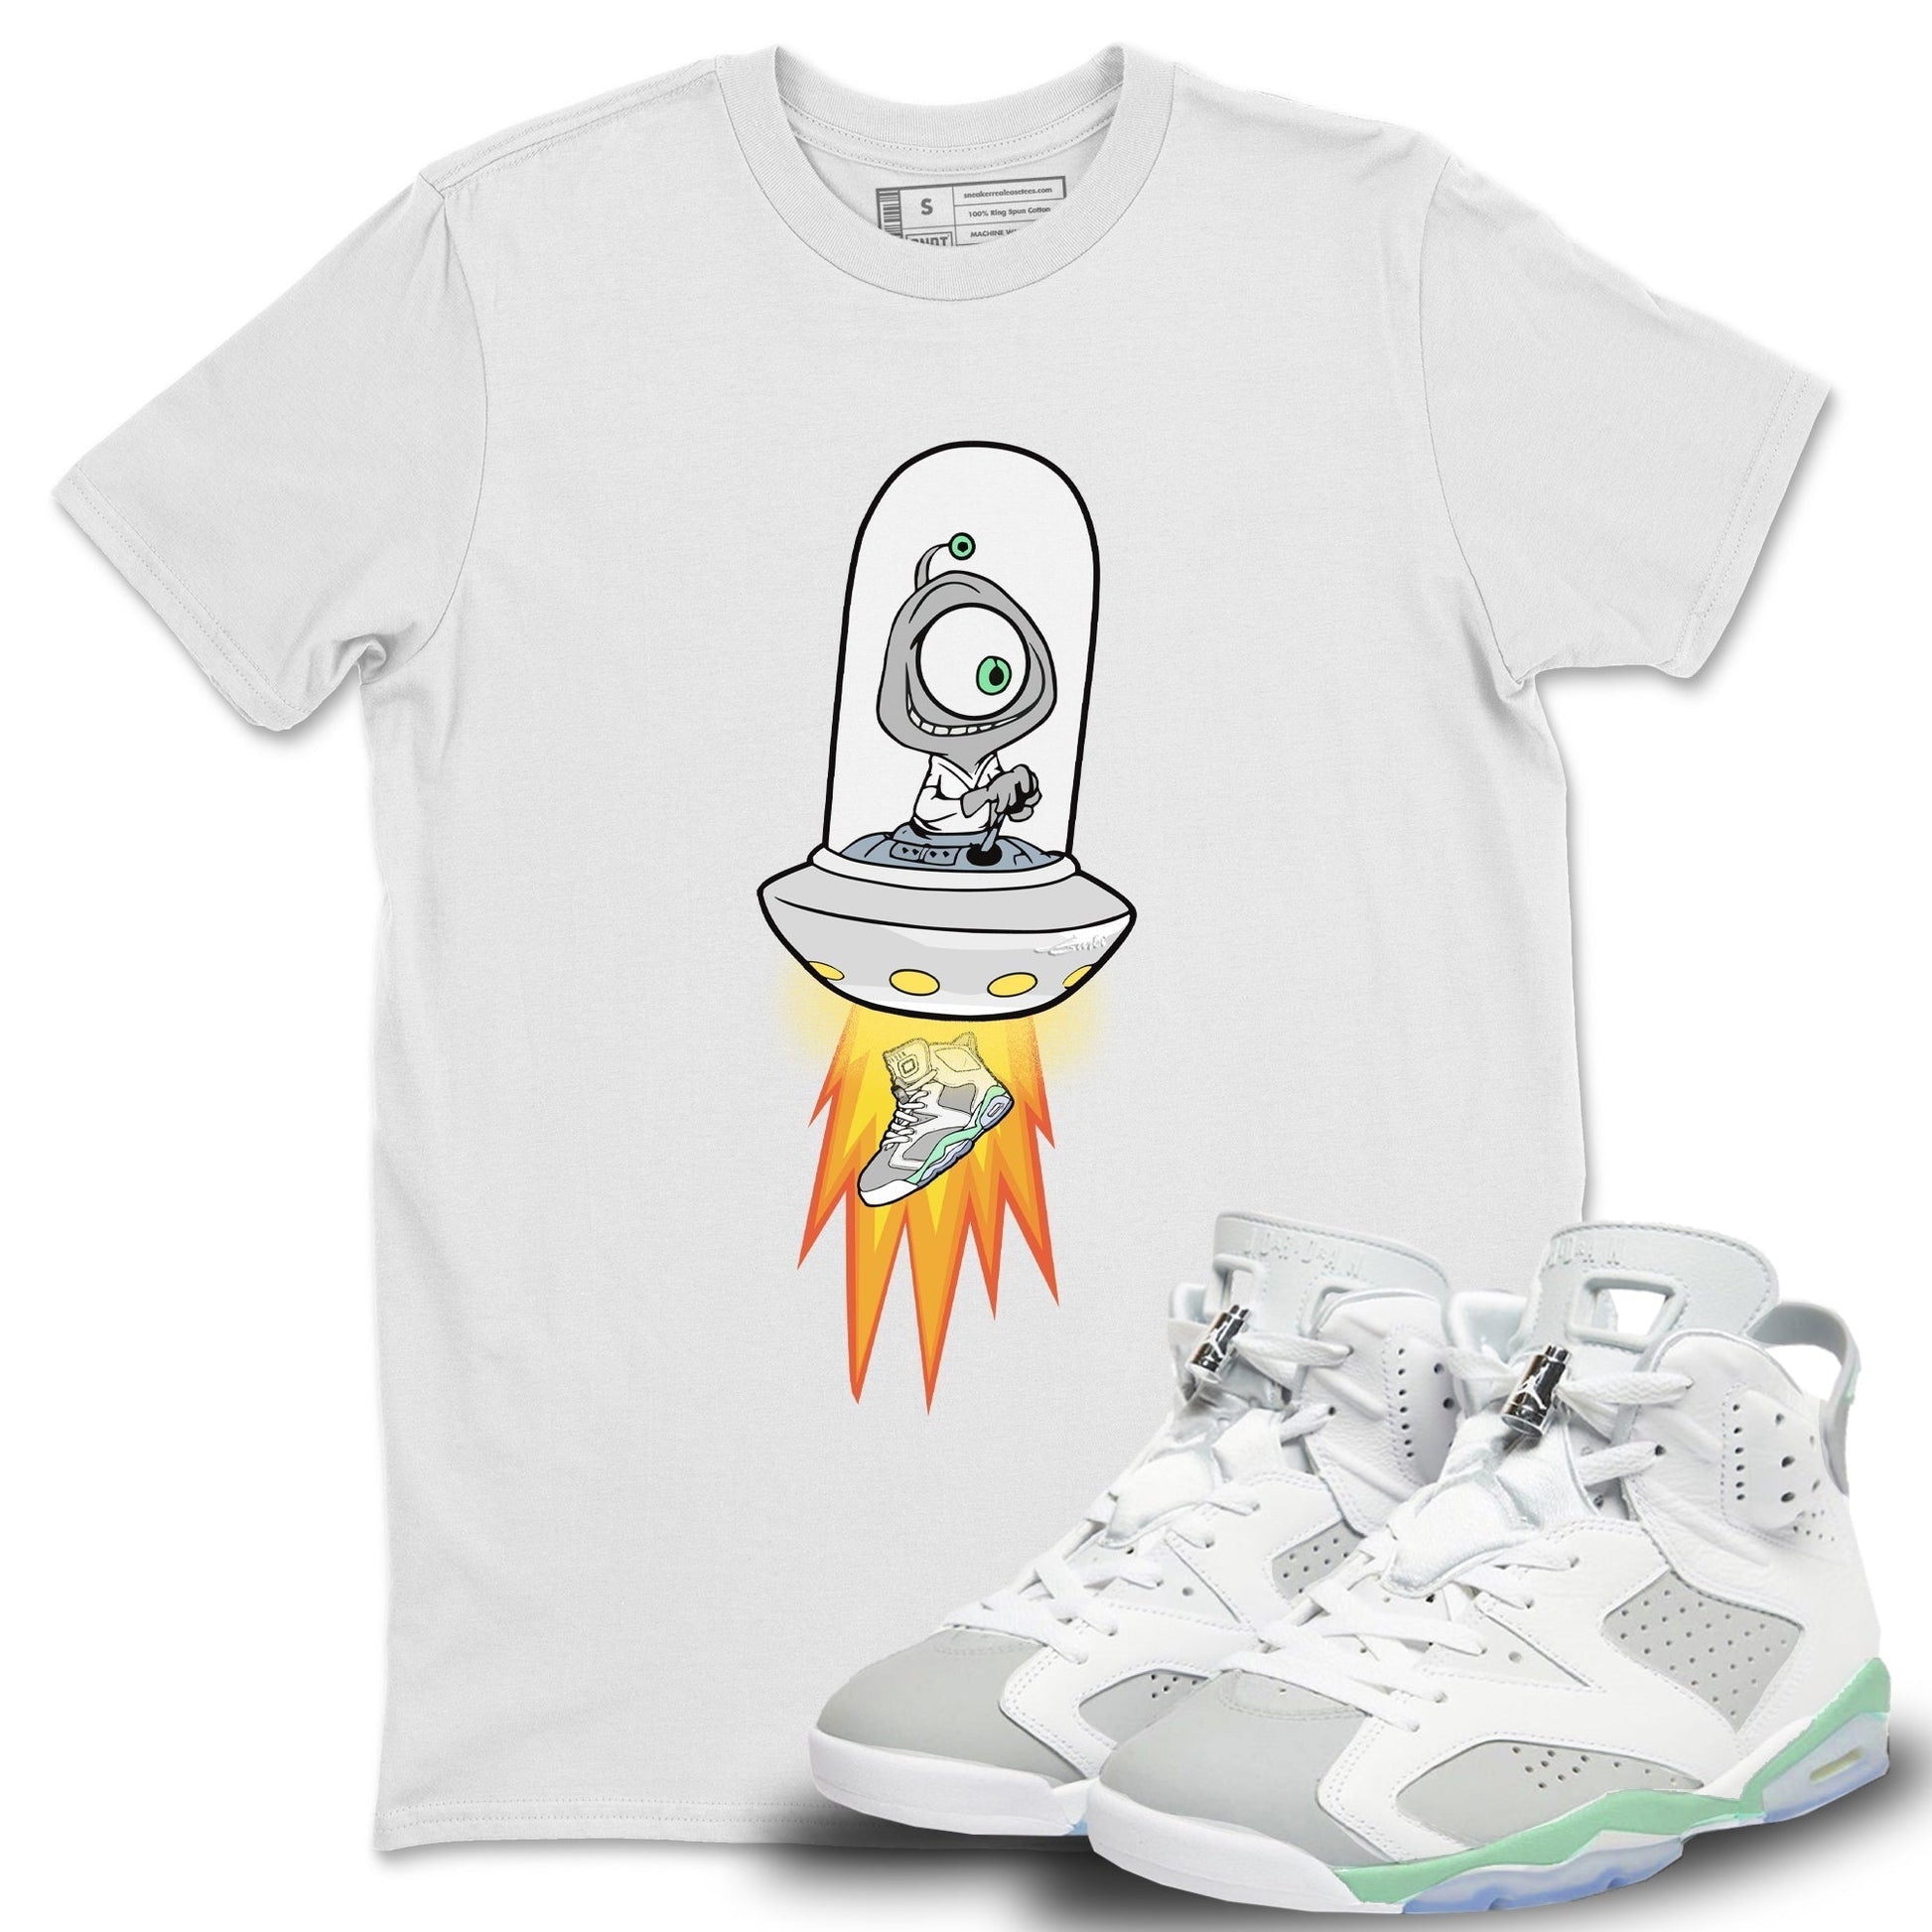 Jordan 6 Mint Foam Sneaker Match Tees Alien Sneaker Tees Jordan 6 Mint Foam Sneaker Release Tees Unisex Shirts